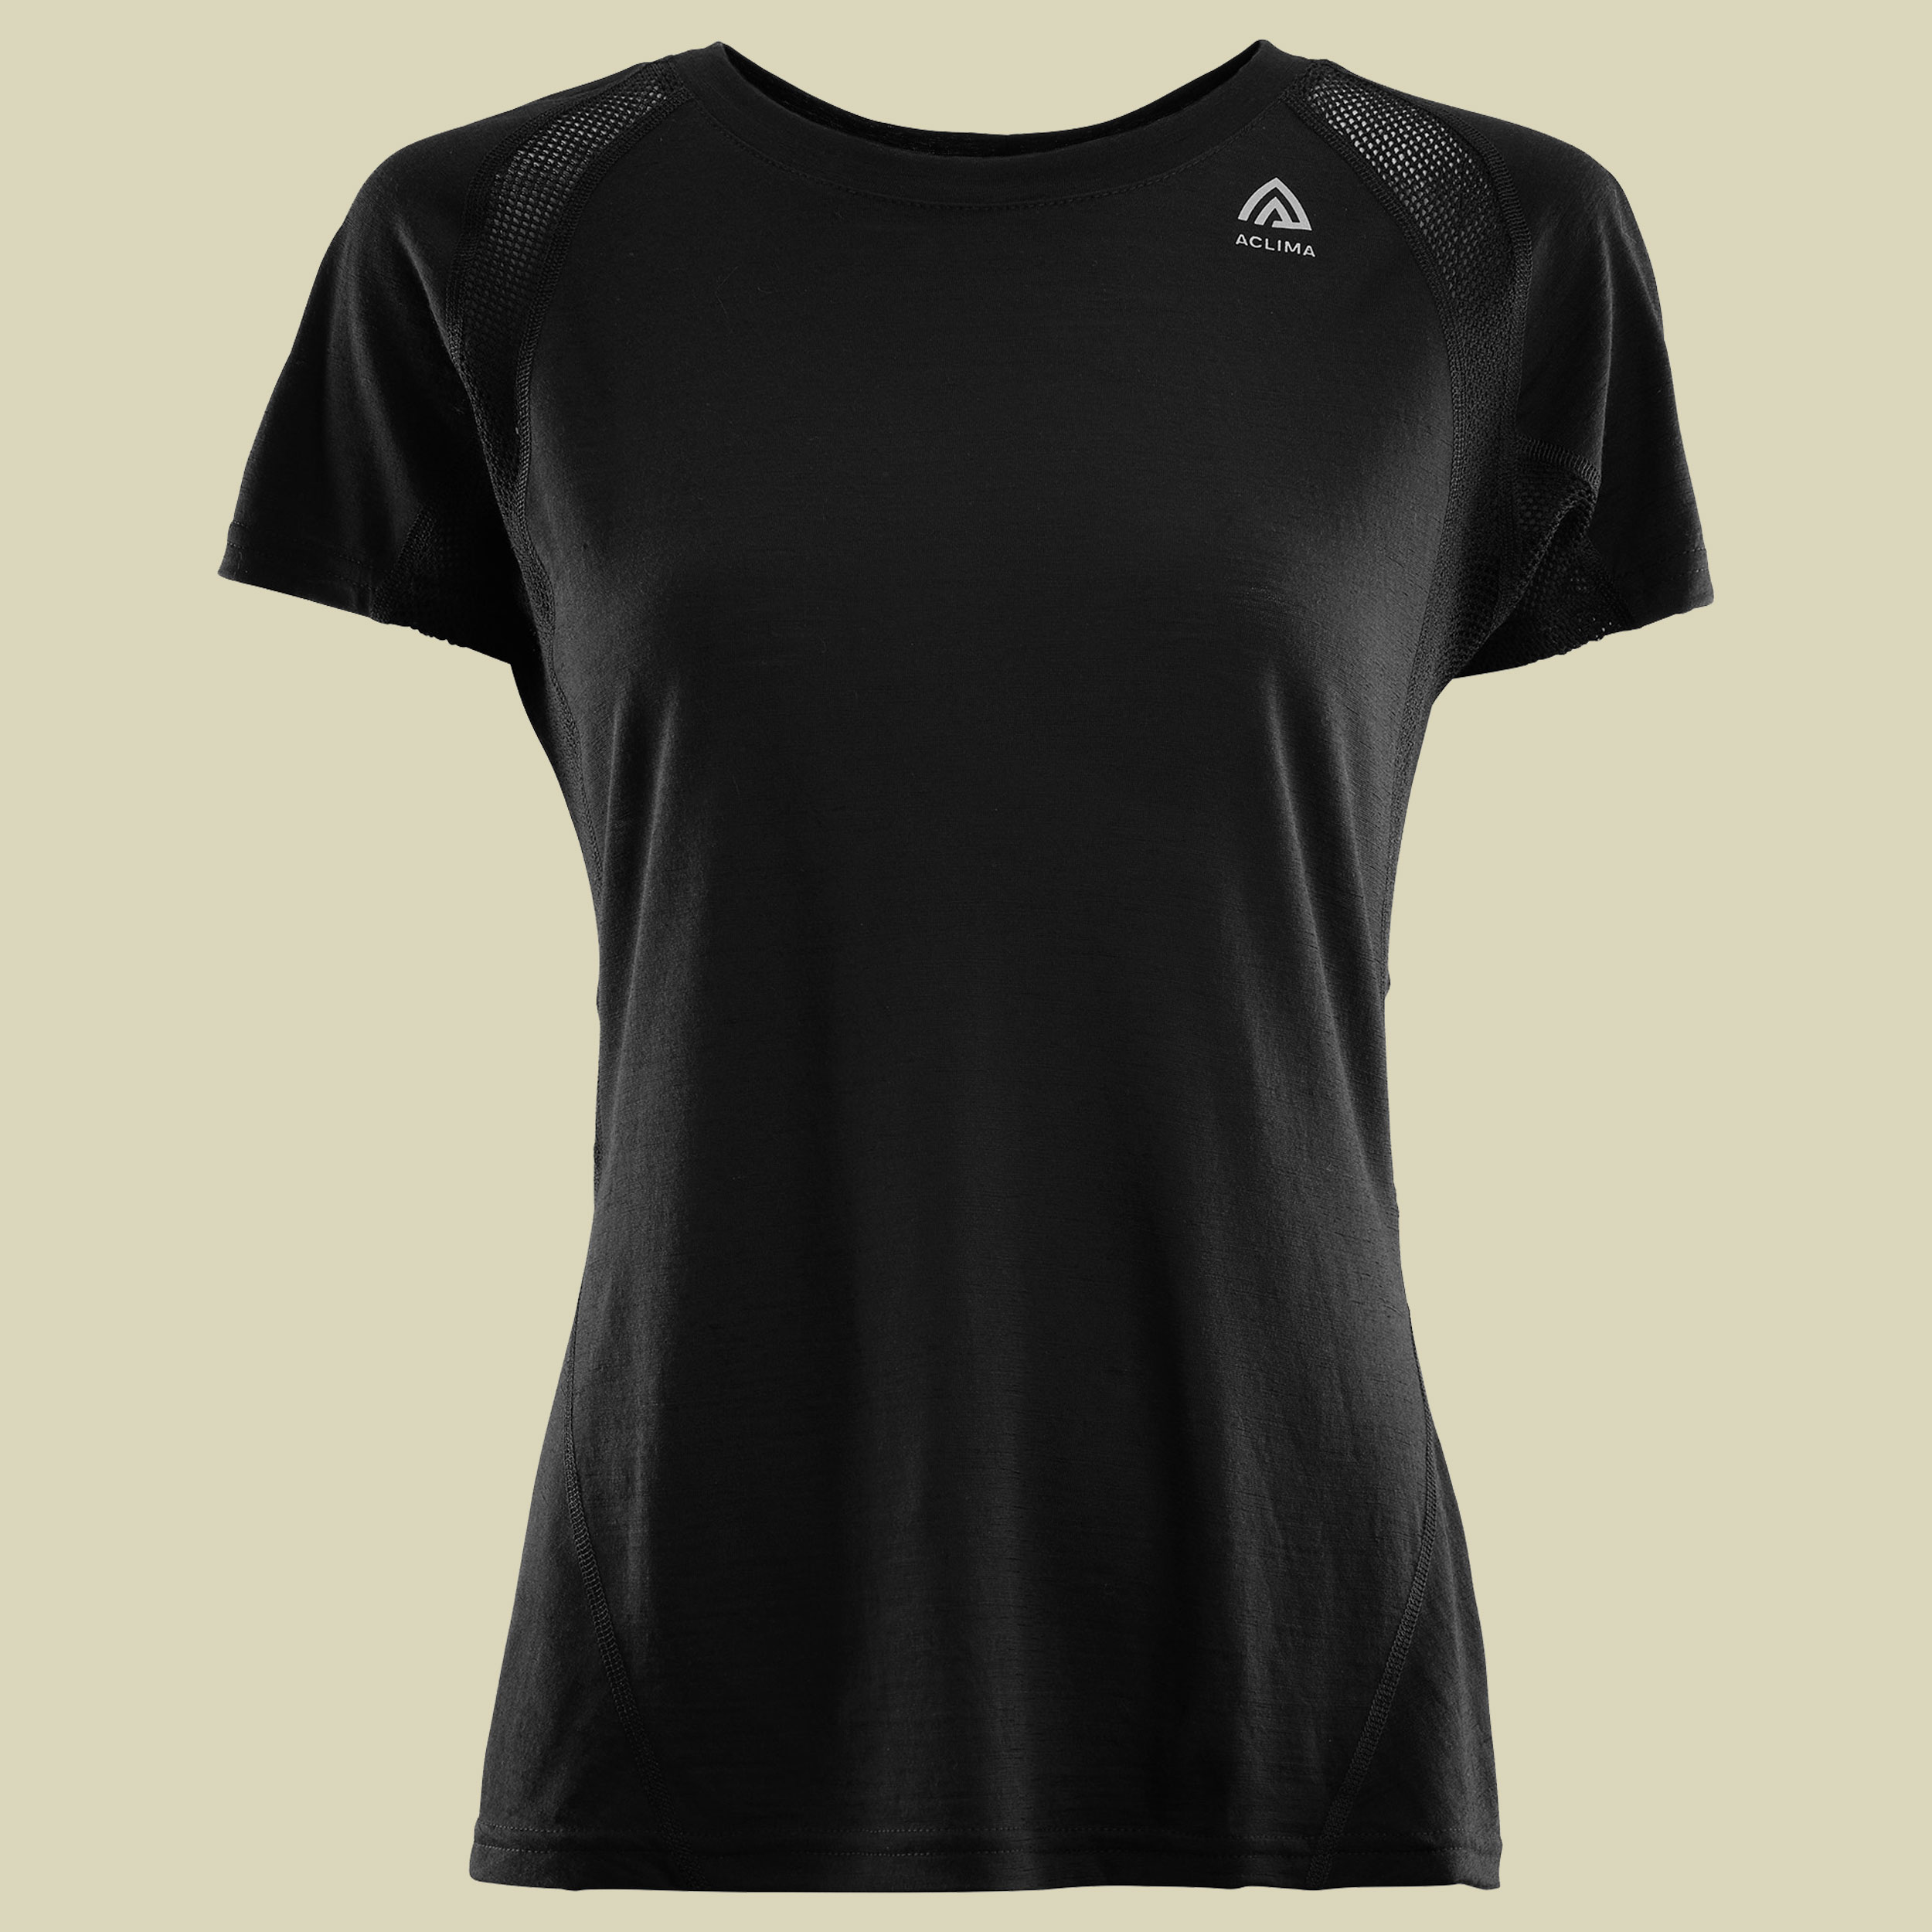 LightWool Sports T-Shirt Women